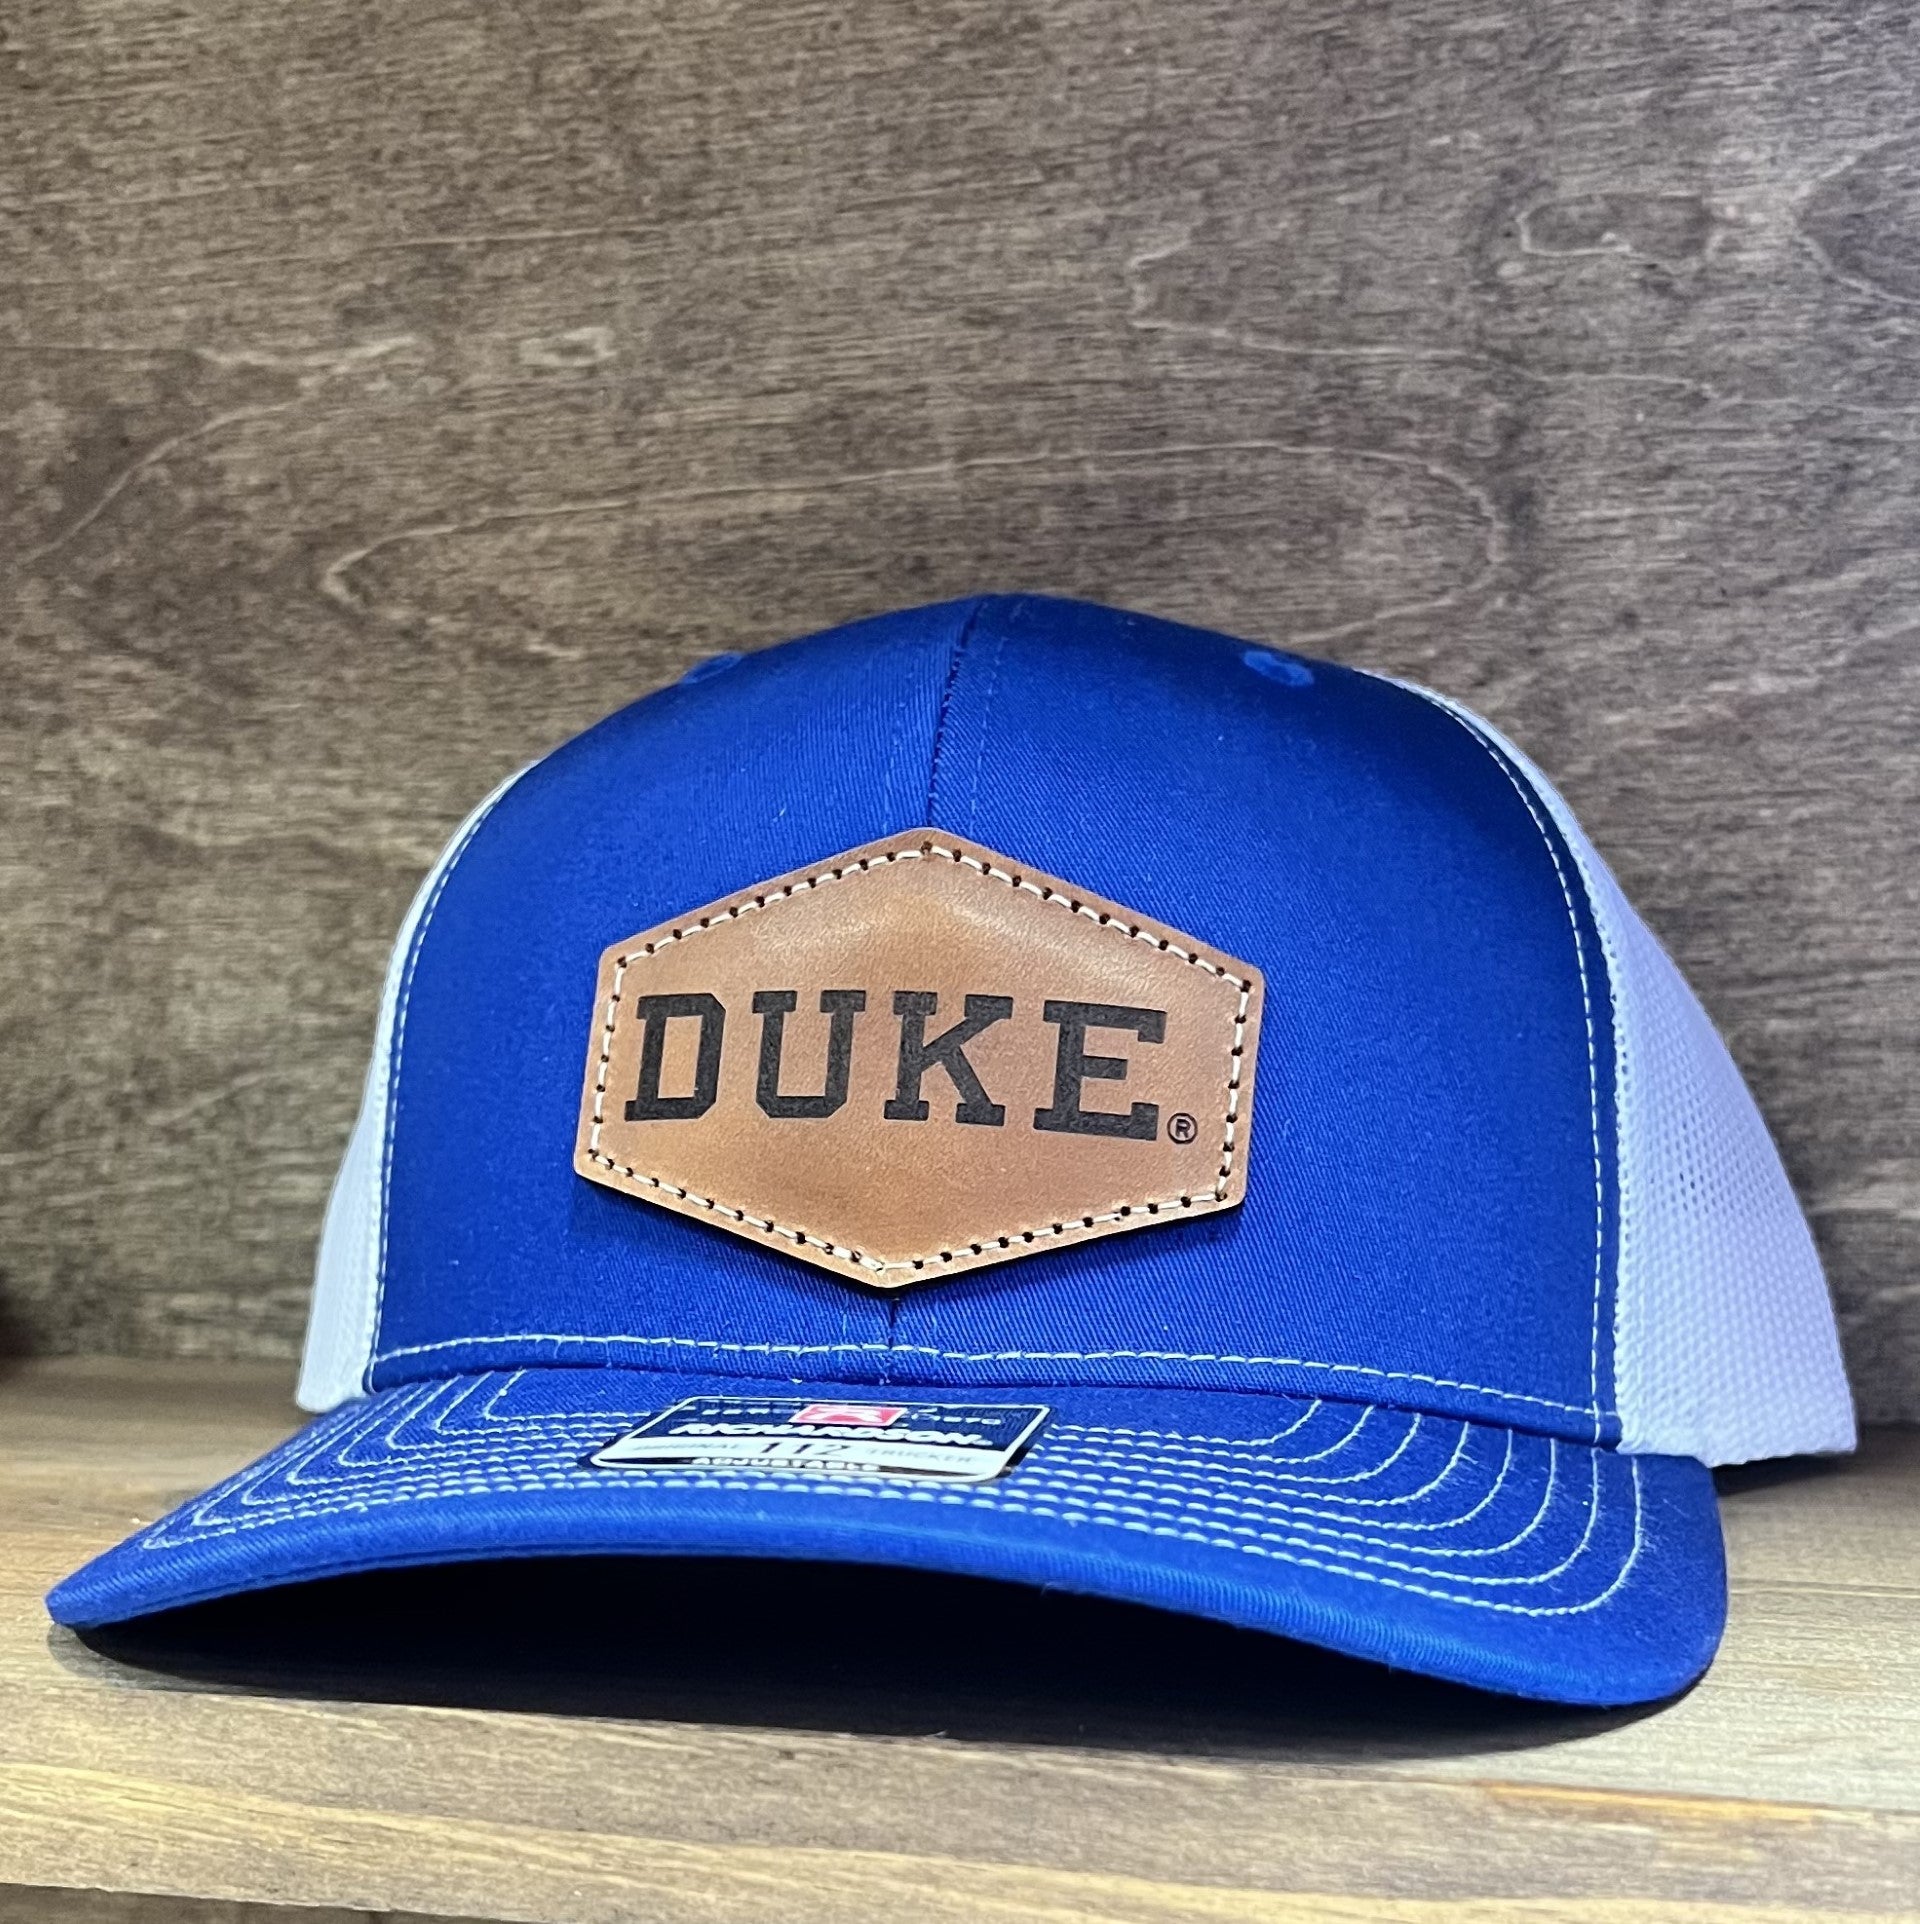 Duke Blue Devils Leather Patch Trucker Hat-(Duke) Royal/White